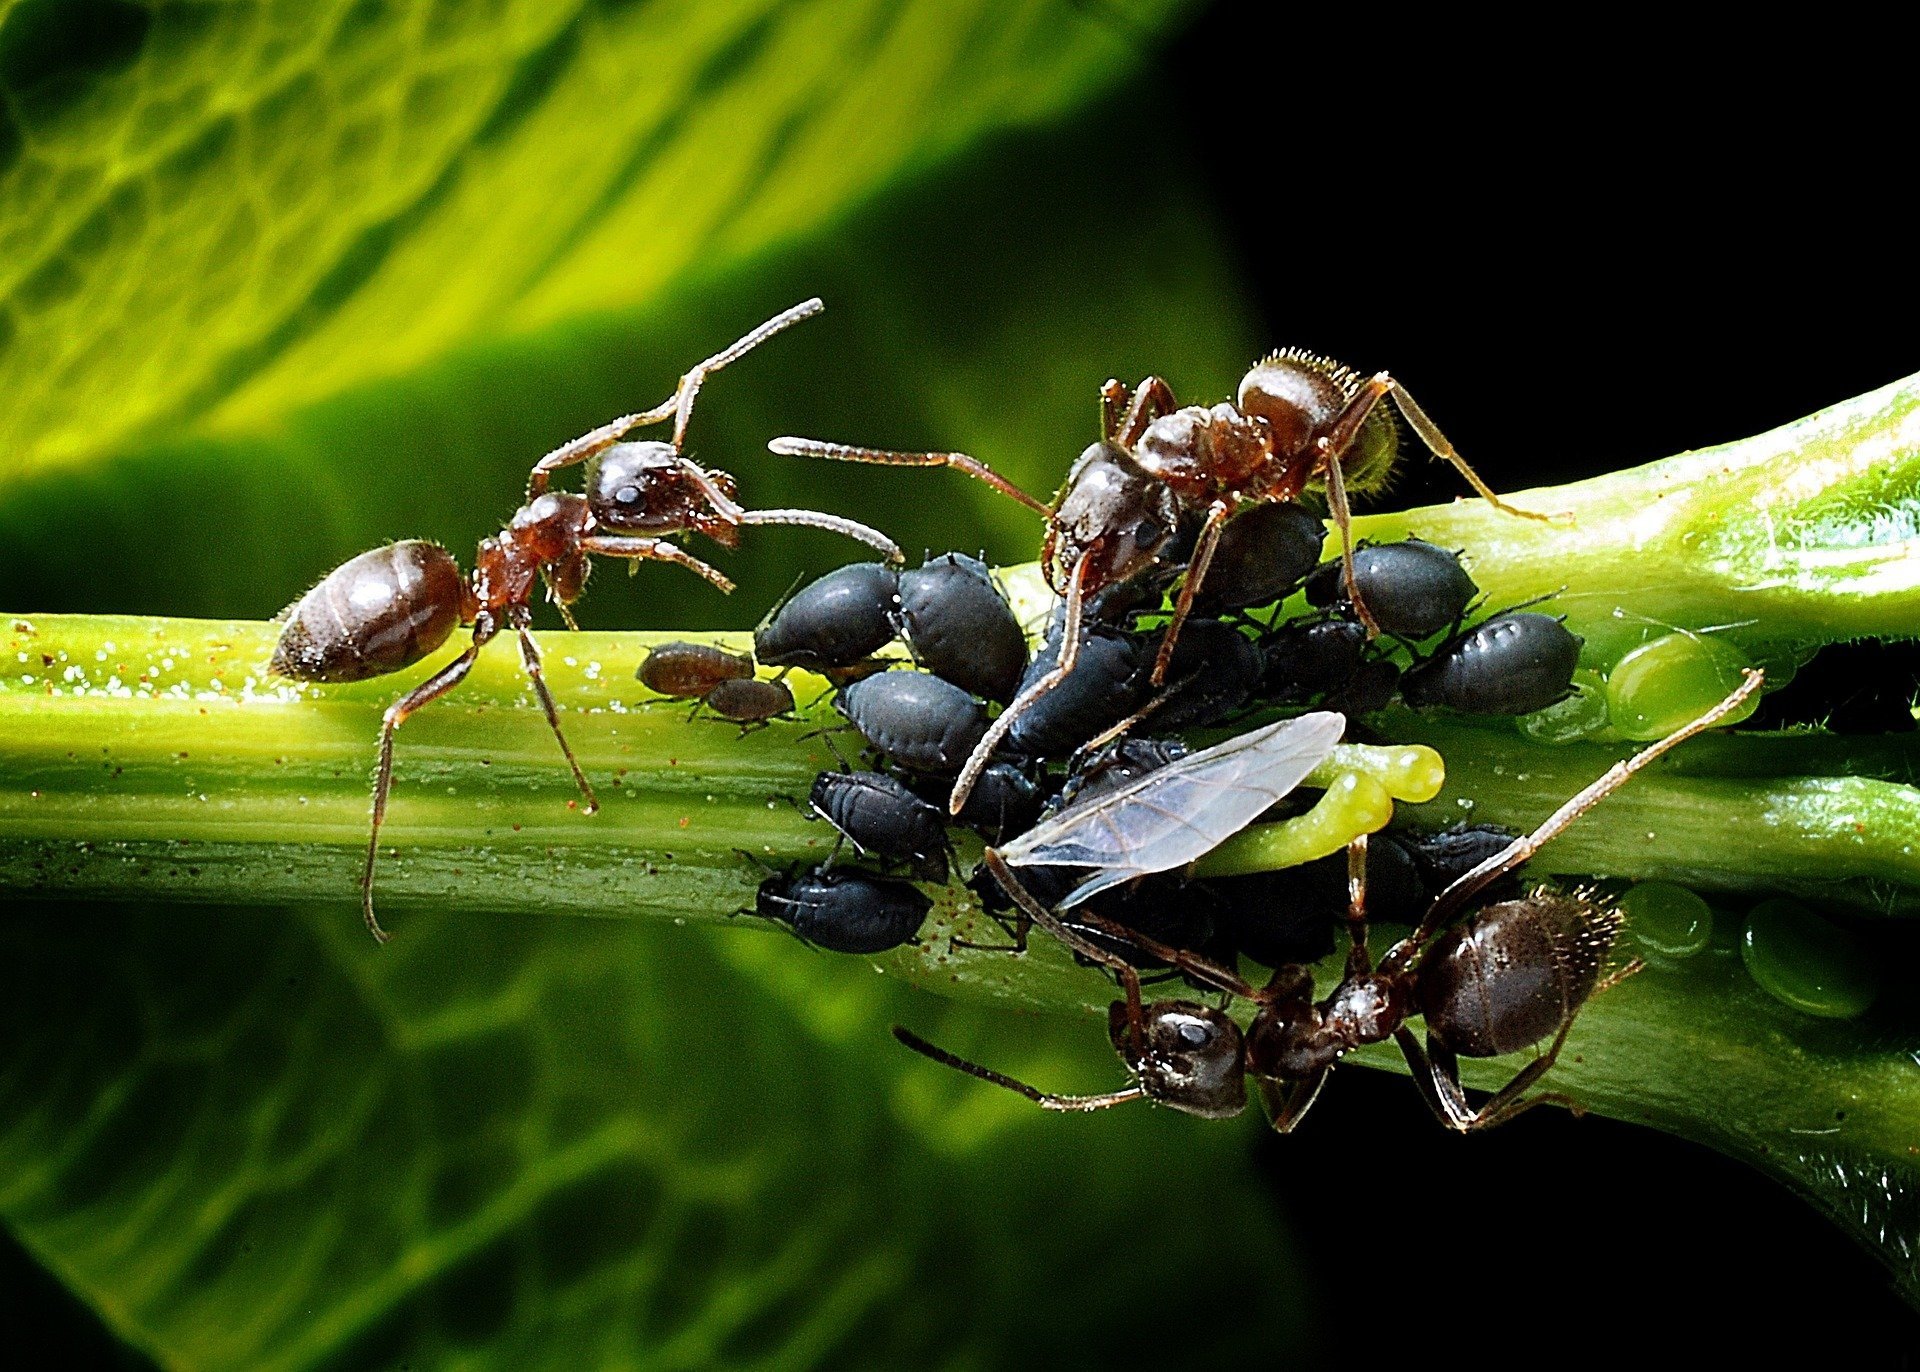 Em contato com os pulgões, como na foto, as formigas os estimulam com as antenas e fazem com que eles excretem gotas de um líquido que elas ingerem e armazenam no estômago. Reprodução: Flipar